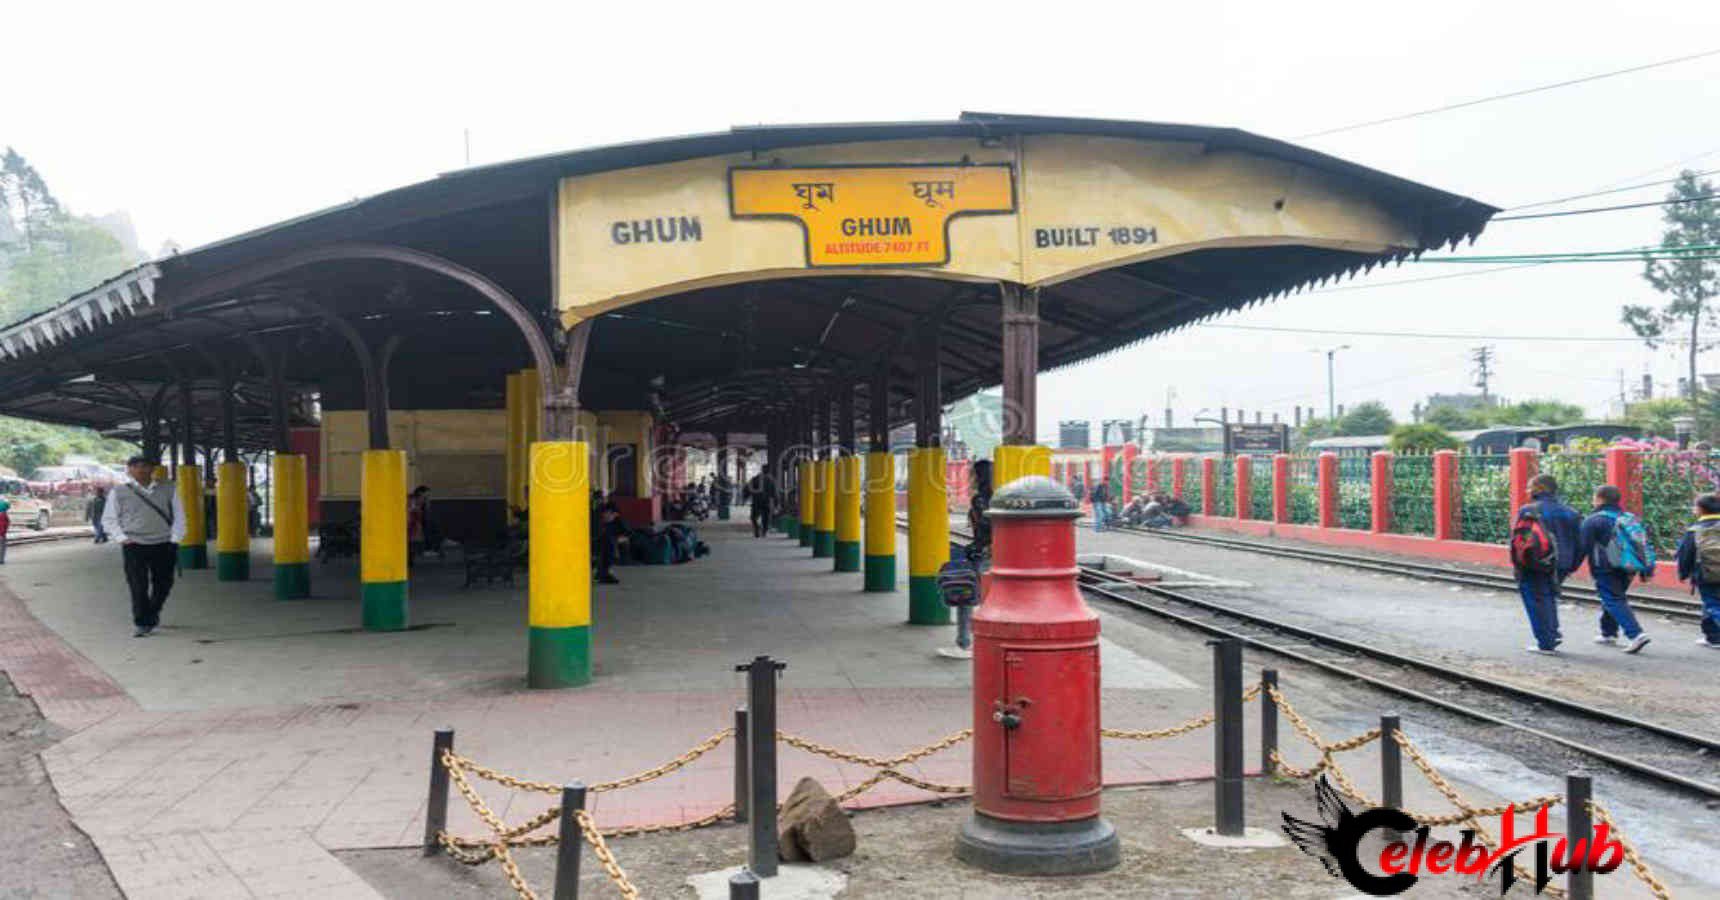 Ghum station MSL